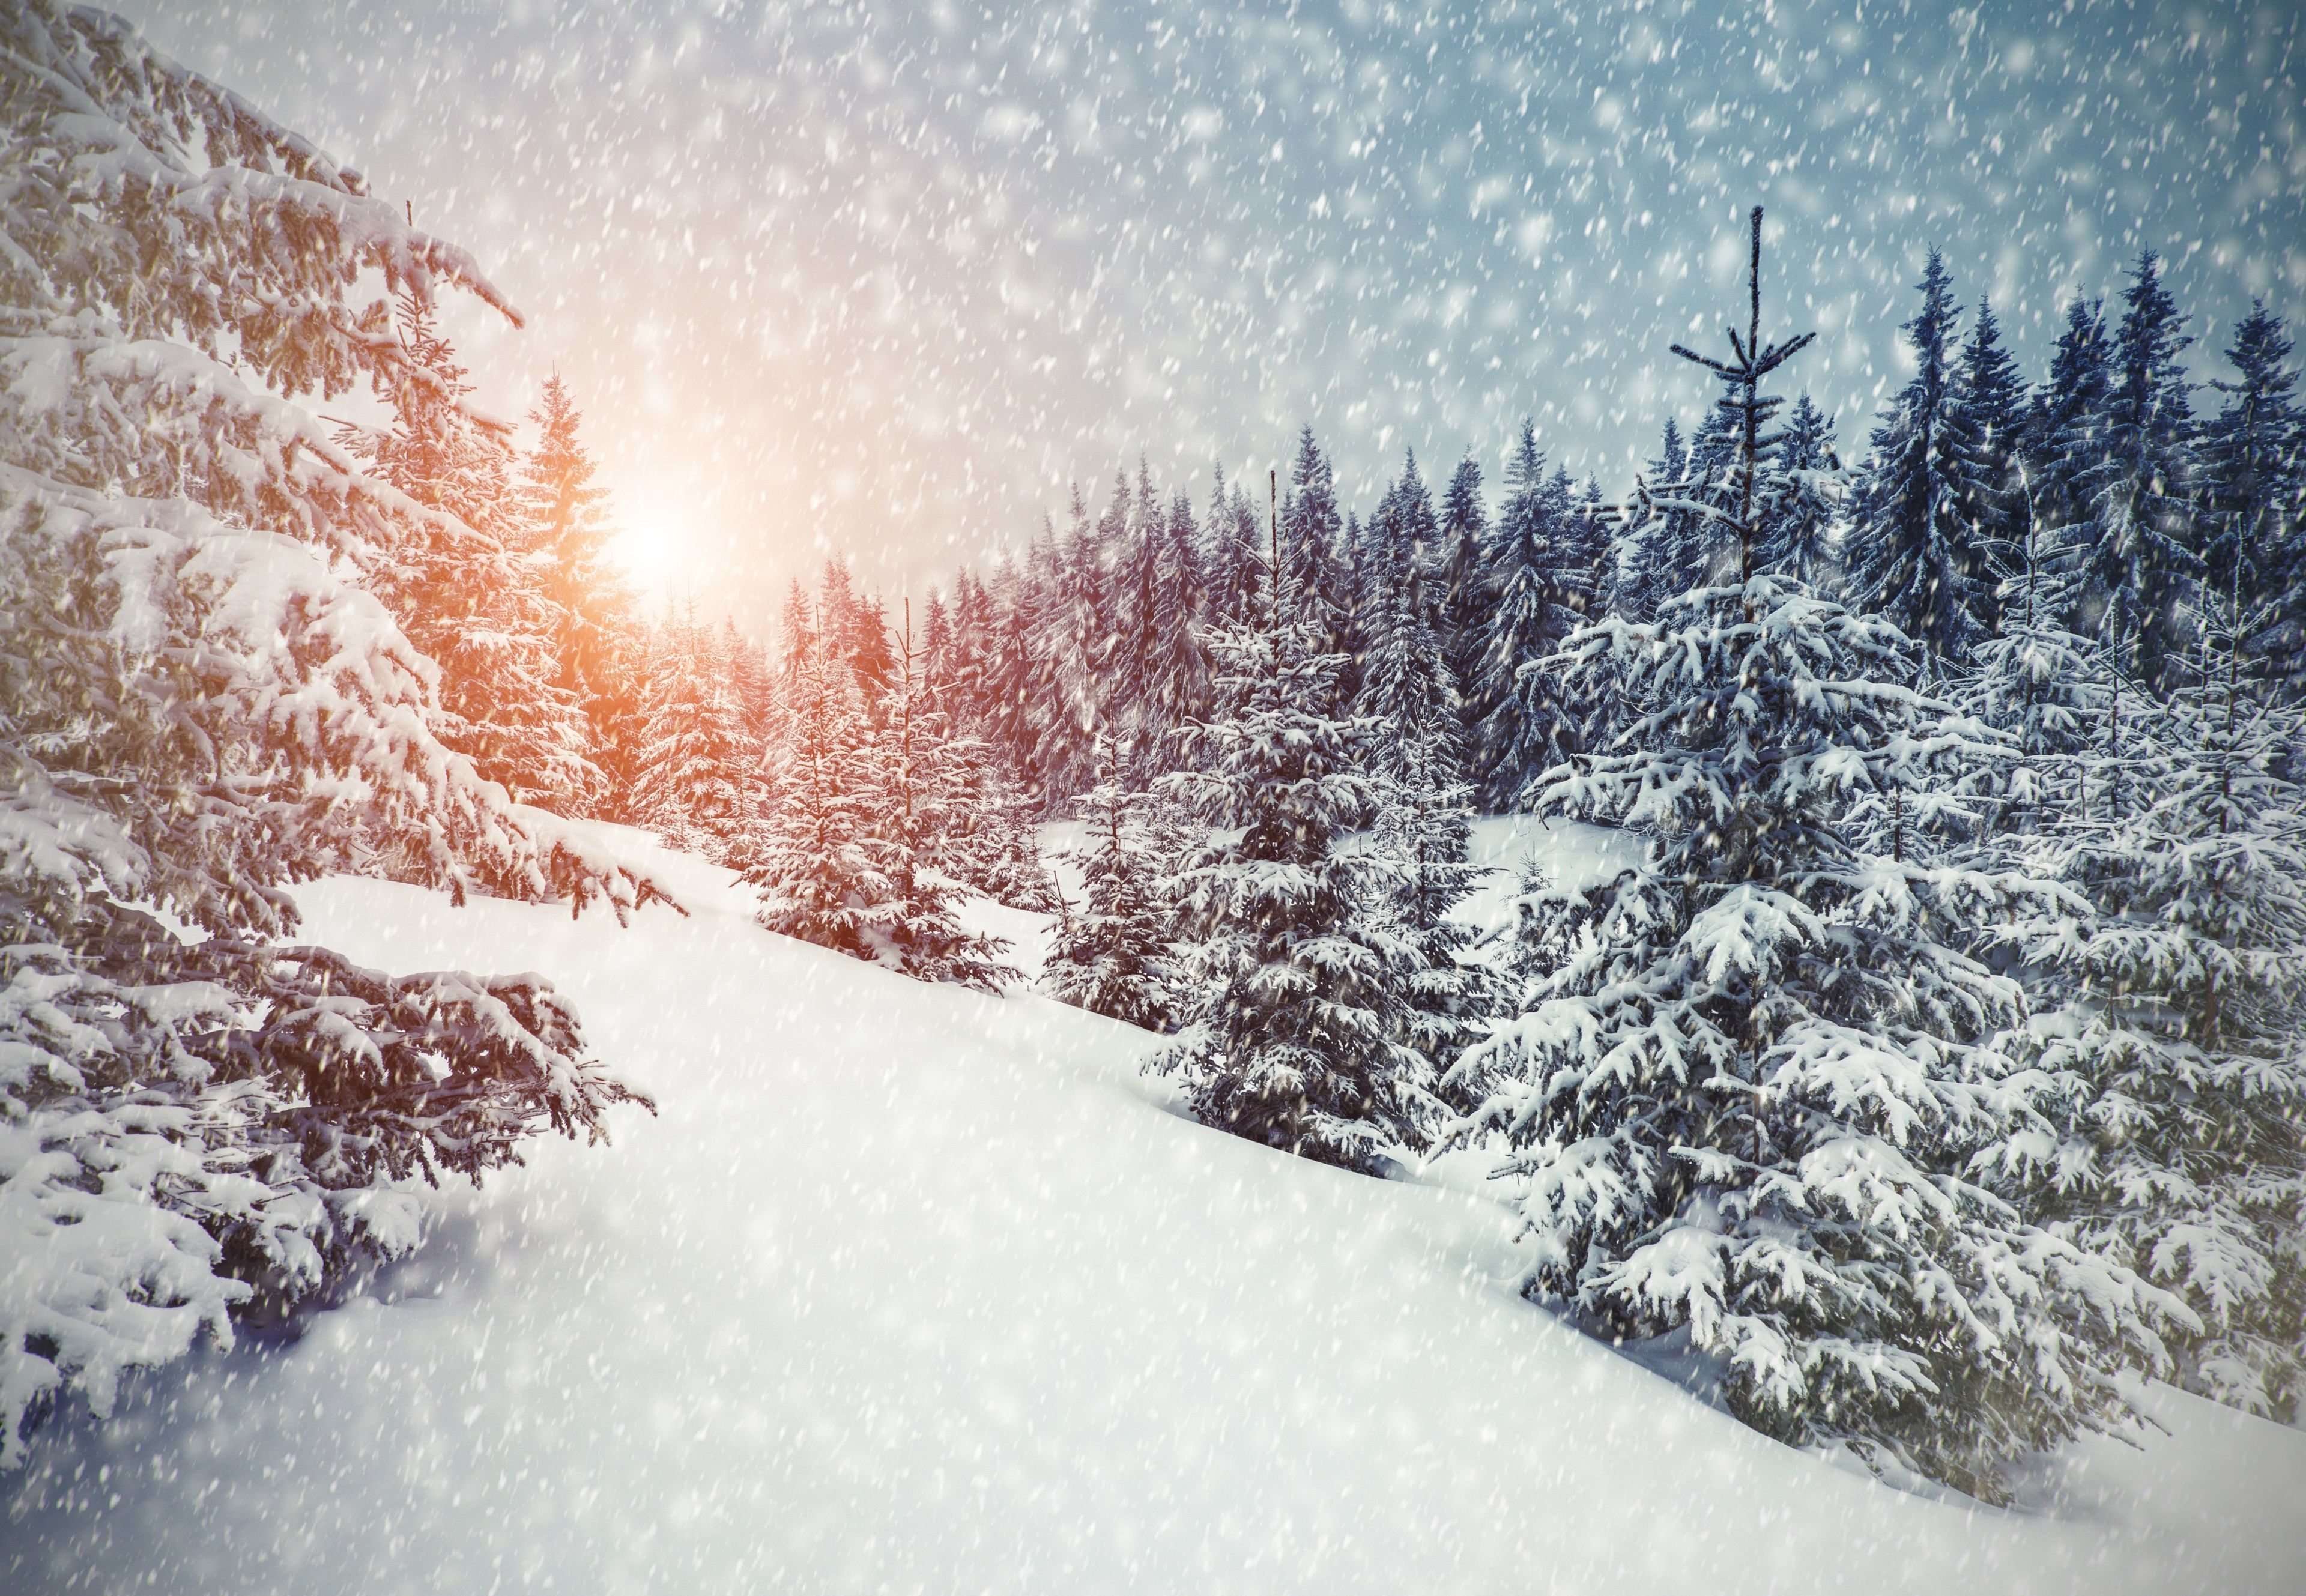 winter 4k wallpaper HD top. Winter wallpaper desktop, Forest backdrops, Winter landscape